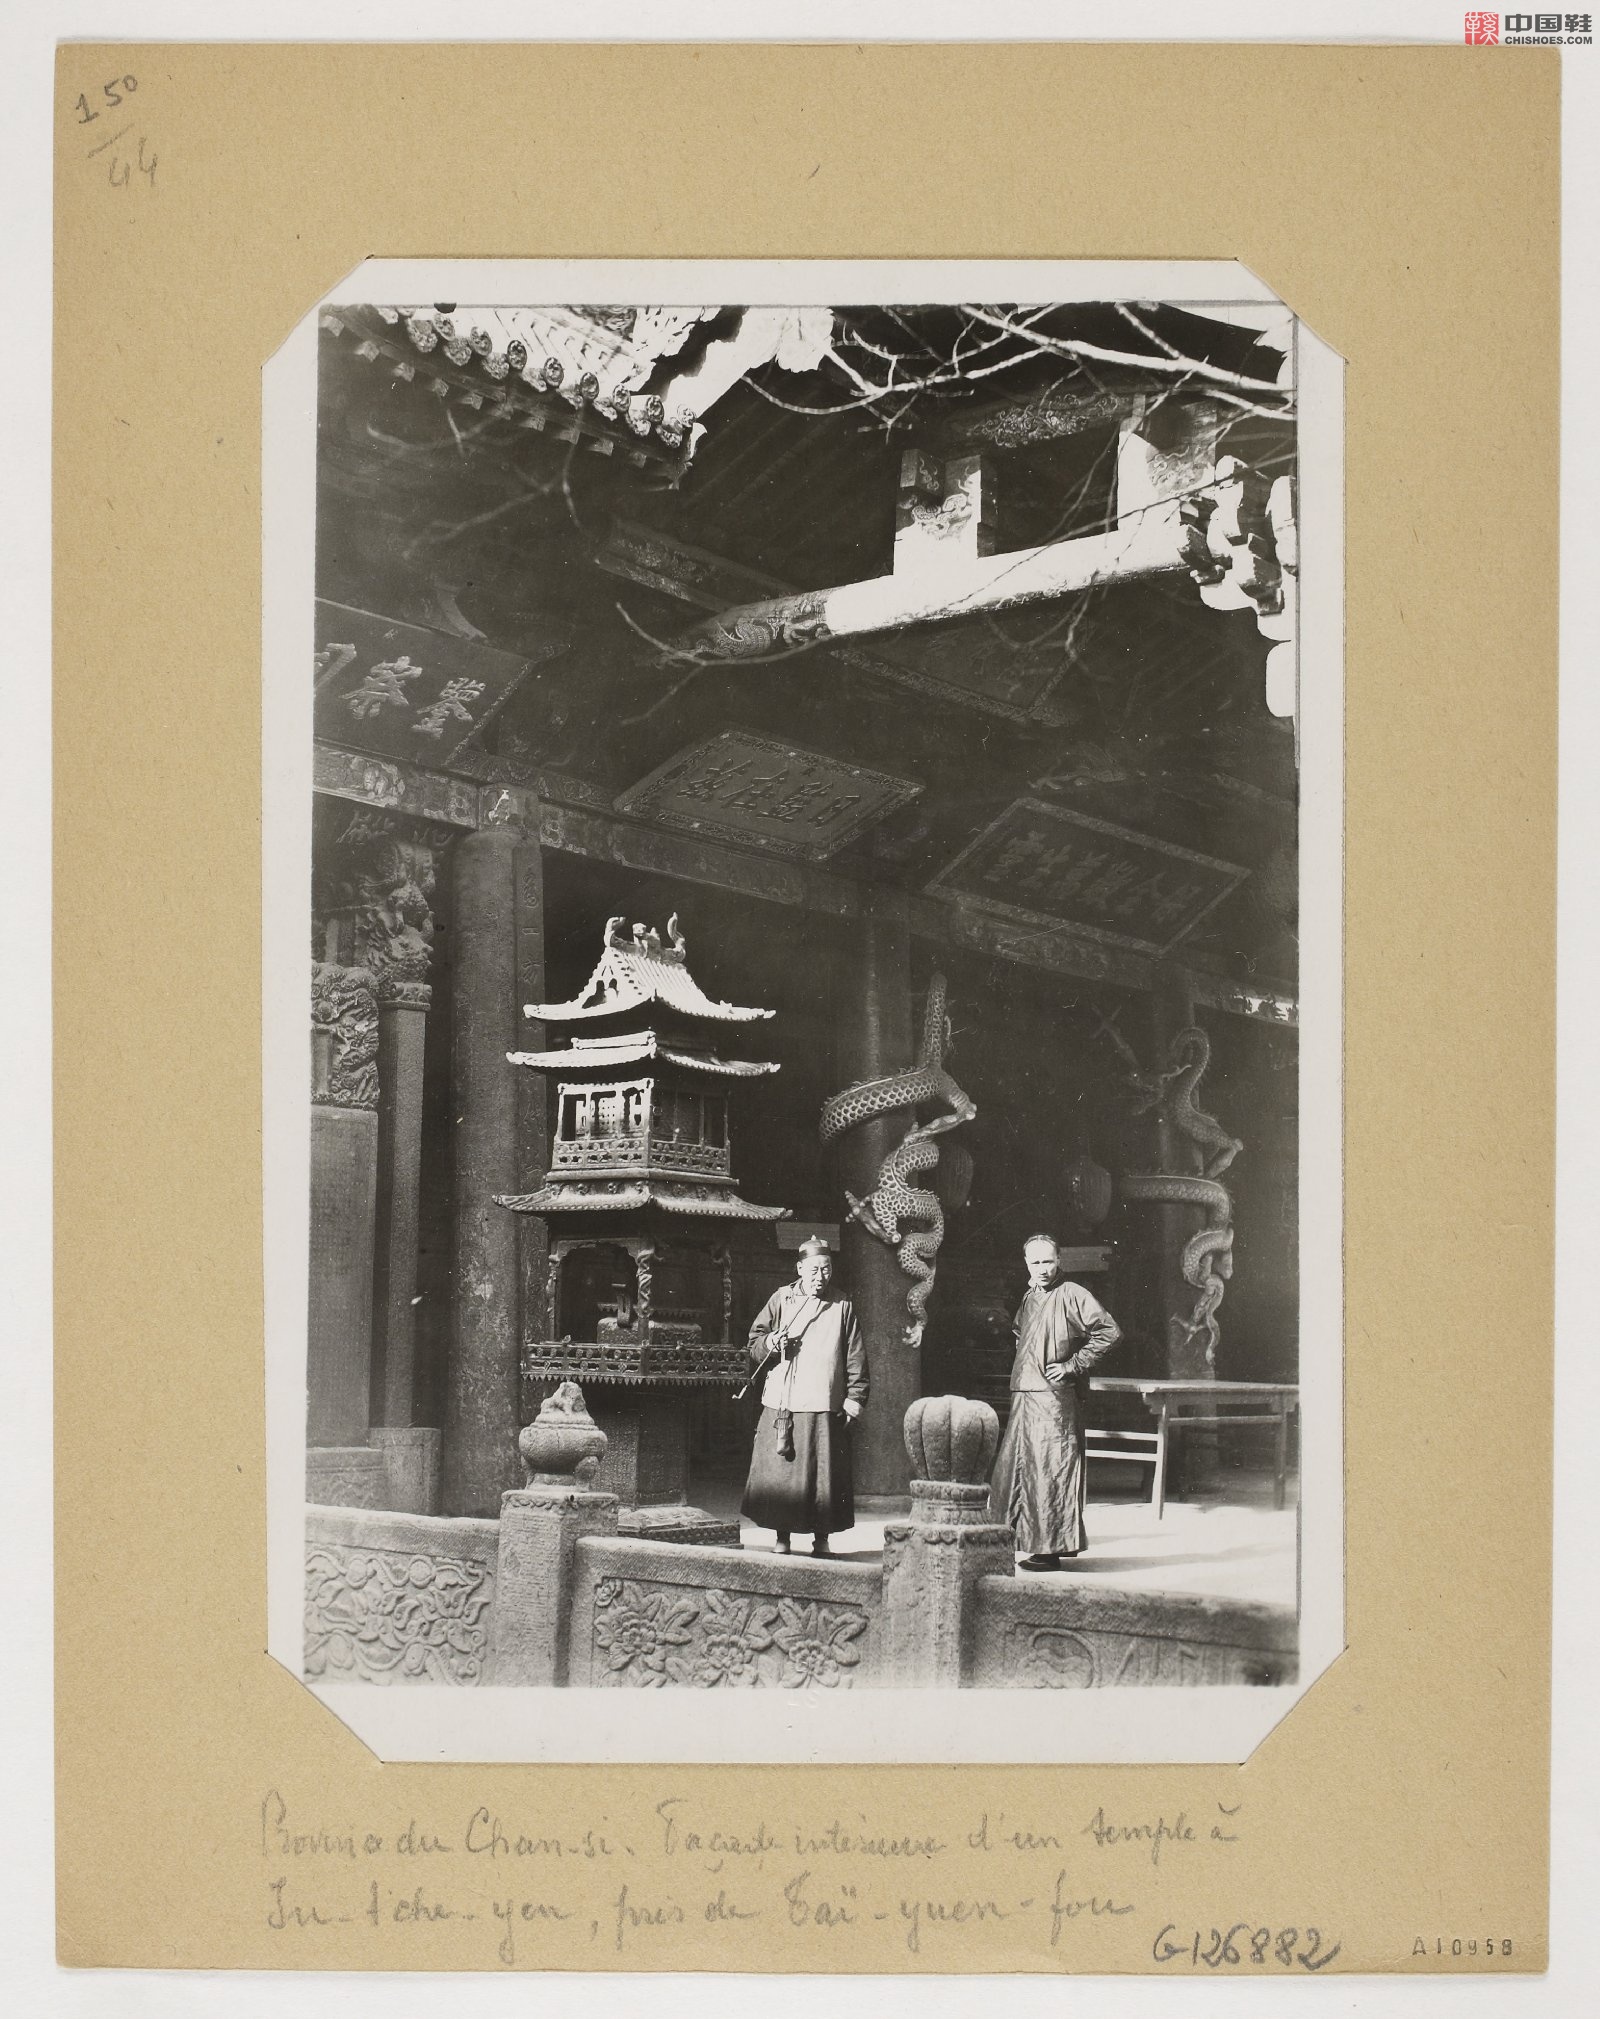 拉里贝的中国影像记录.415幅.By Firmin Laribe.1900-1910年_Page_365.jpg